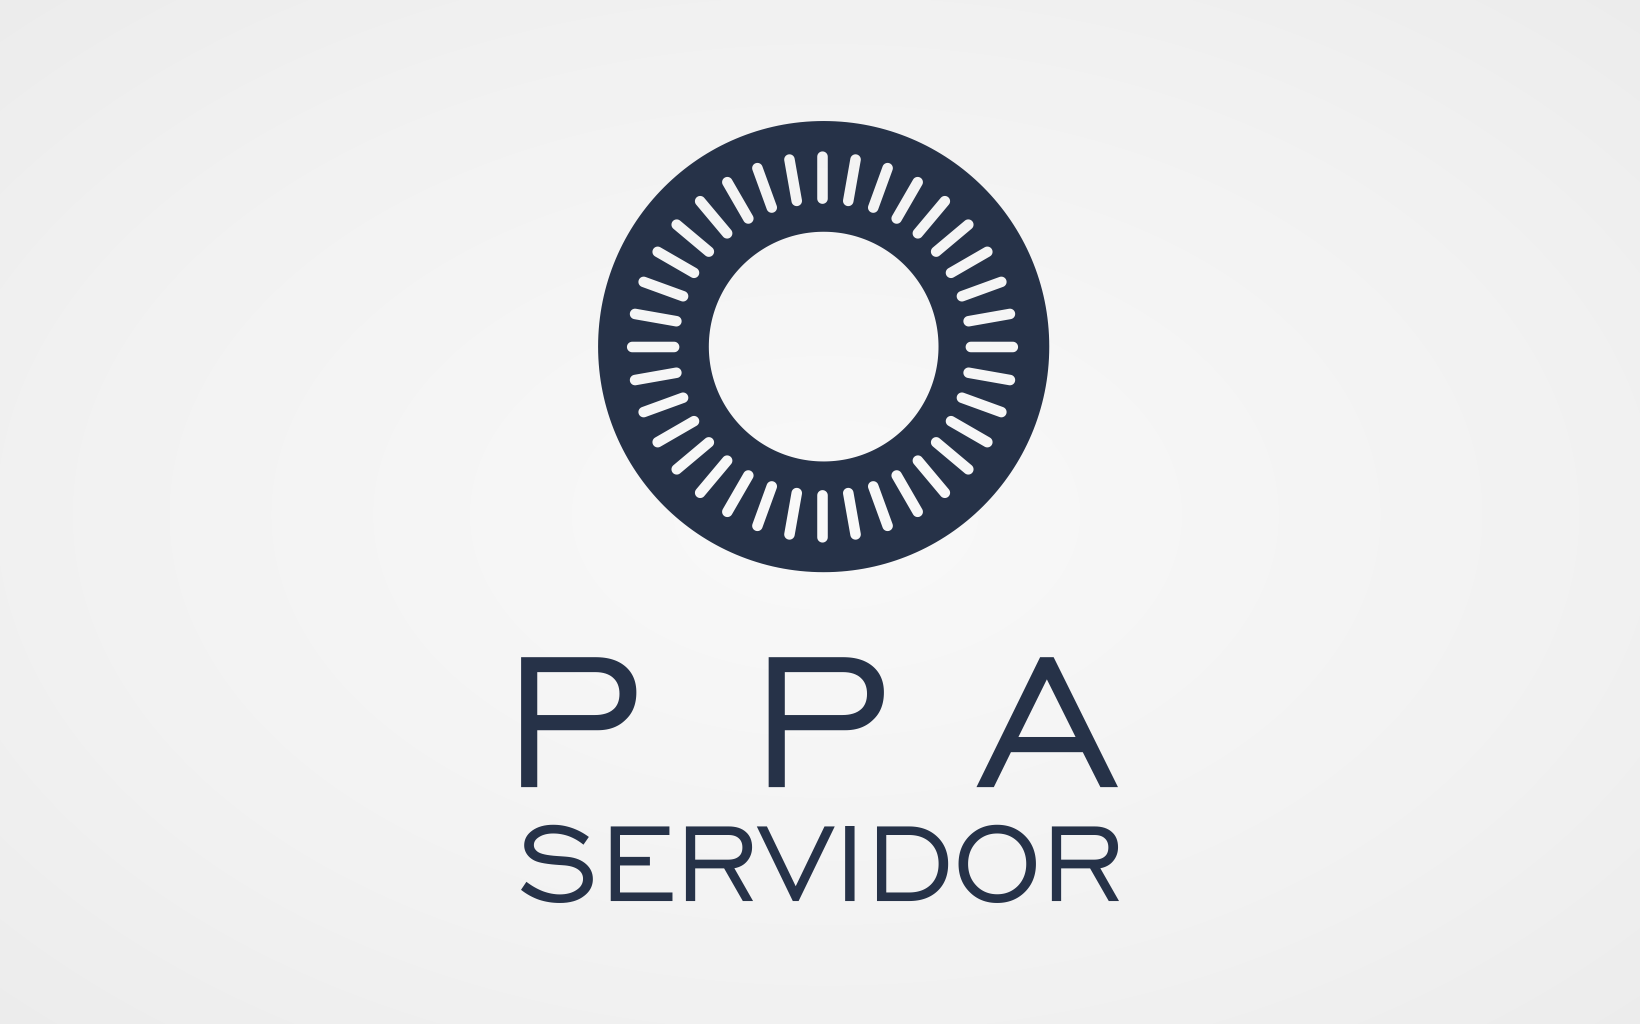 PPA Servidor - SEDUC